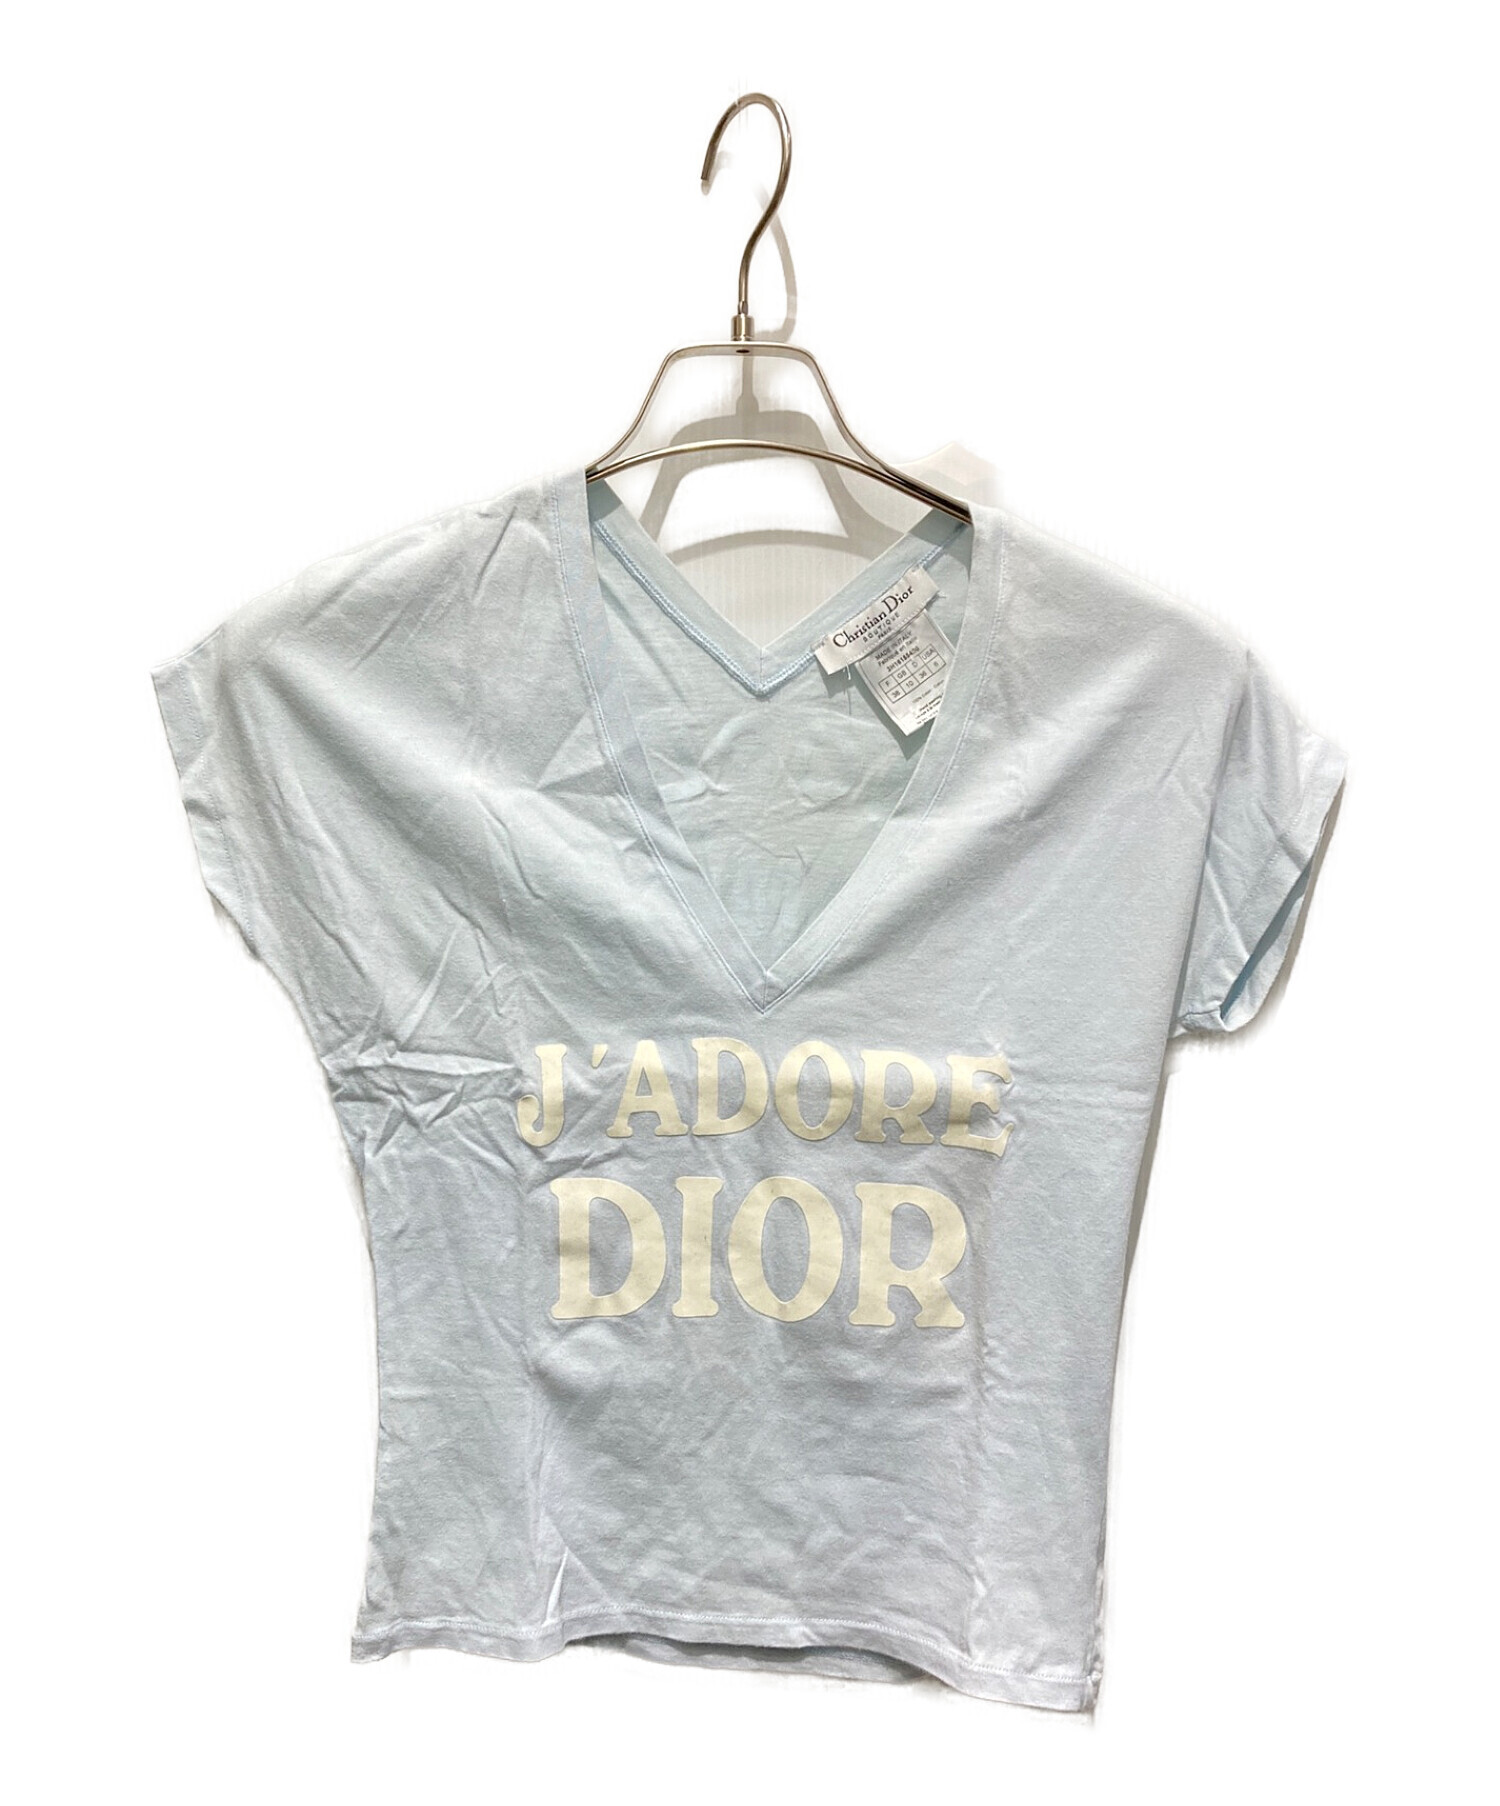 Christian Dior  ジャドール  Tシャツ  ジョンガリアーノ